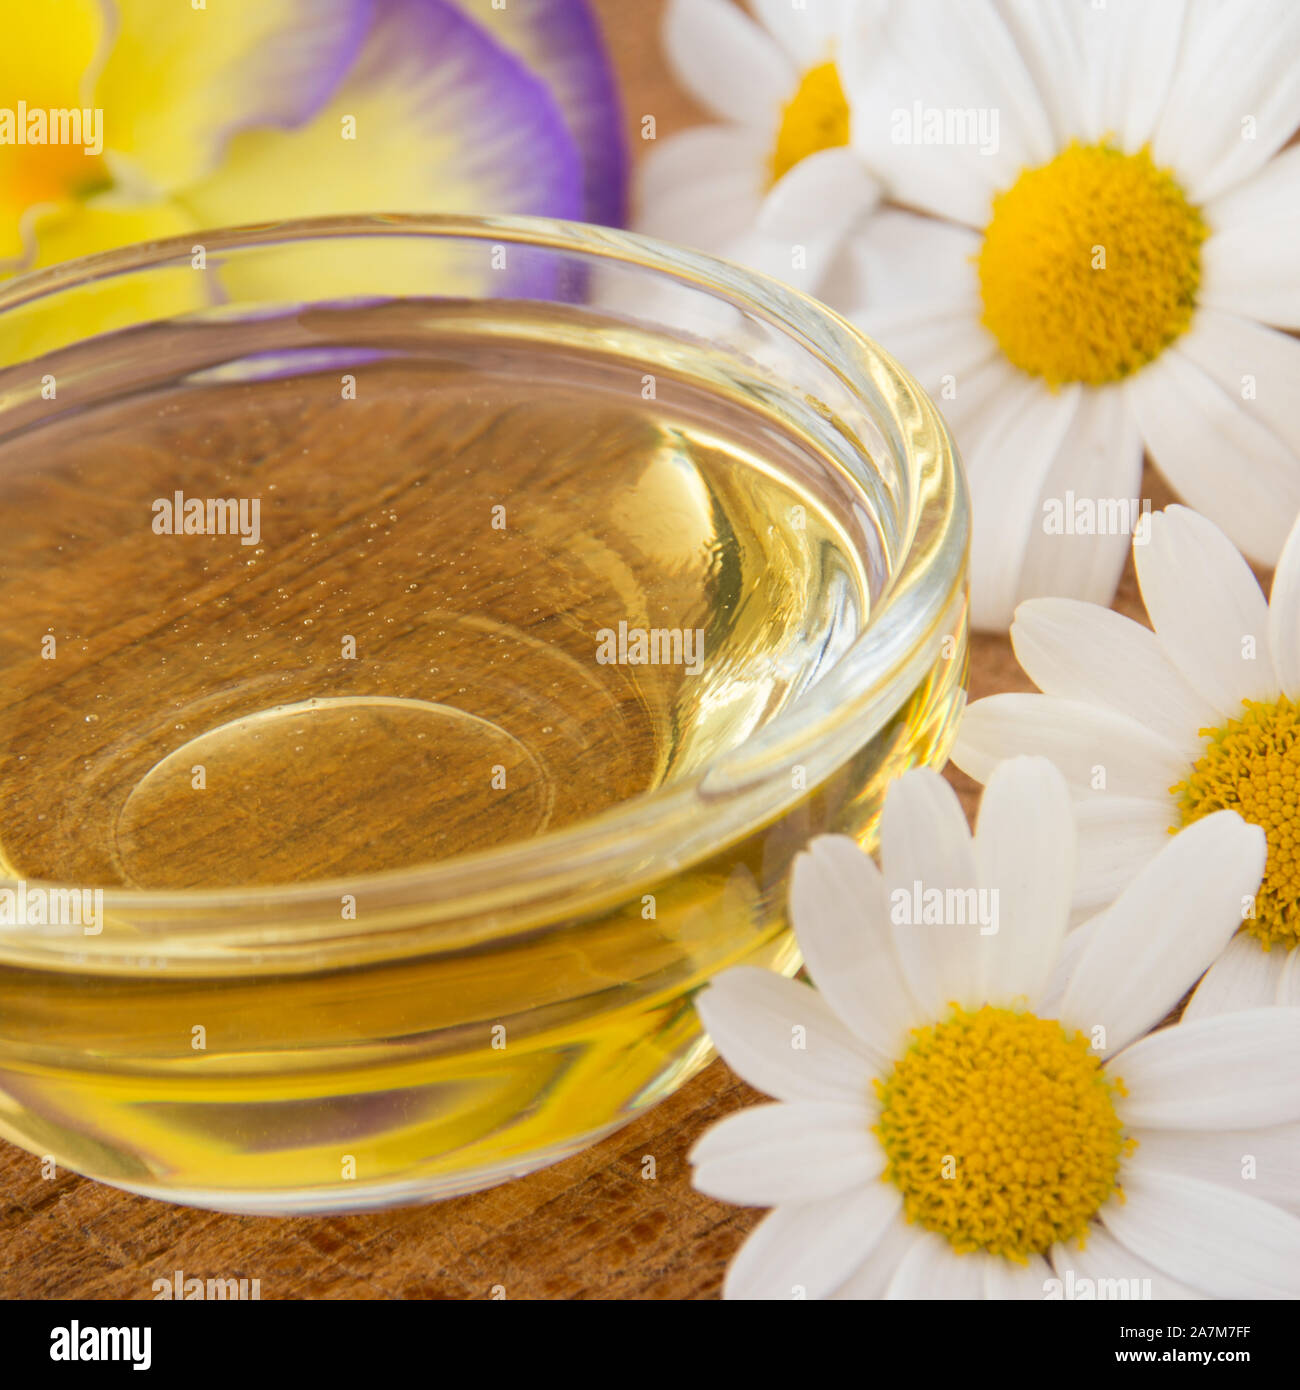 La miel en el tazón de vidrio con flores como fondo Foto de stock